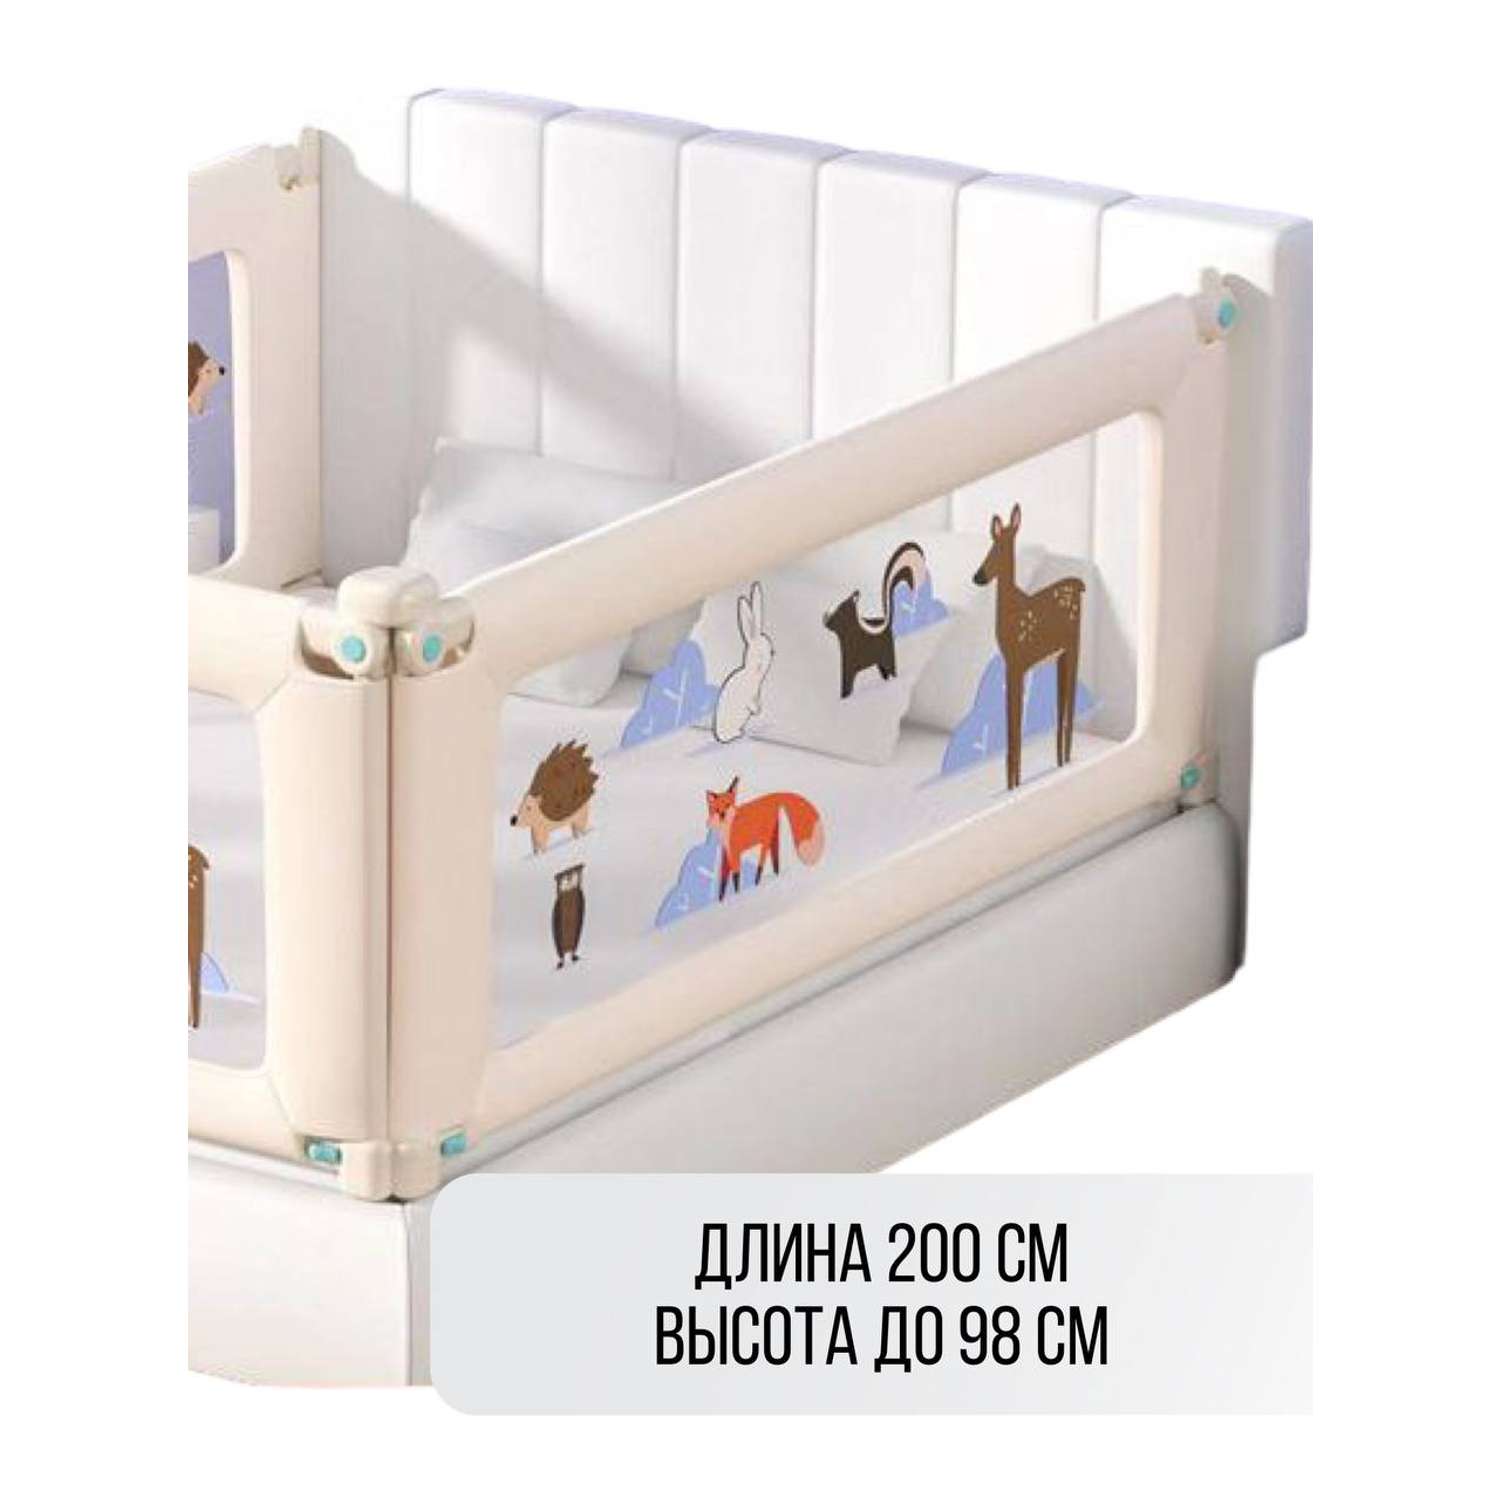 Барьер для кровати Safely and Soft Premium длиной 200см бежевый на одну сторону кровати - фото 1